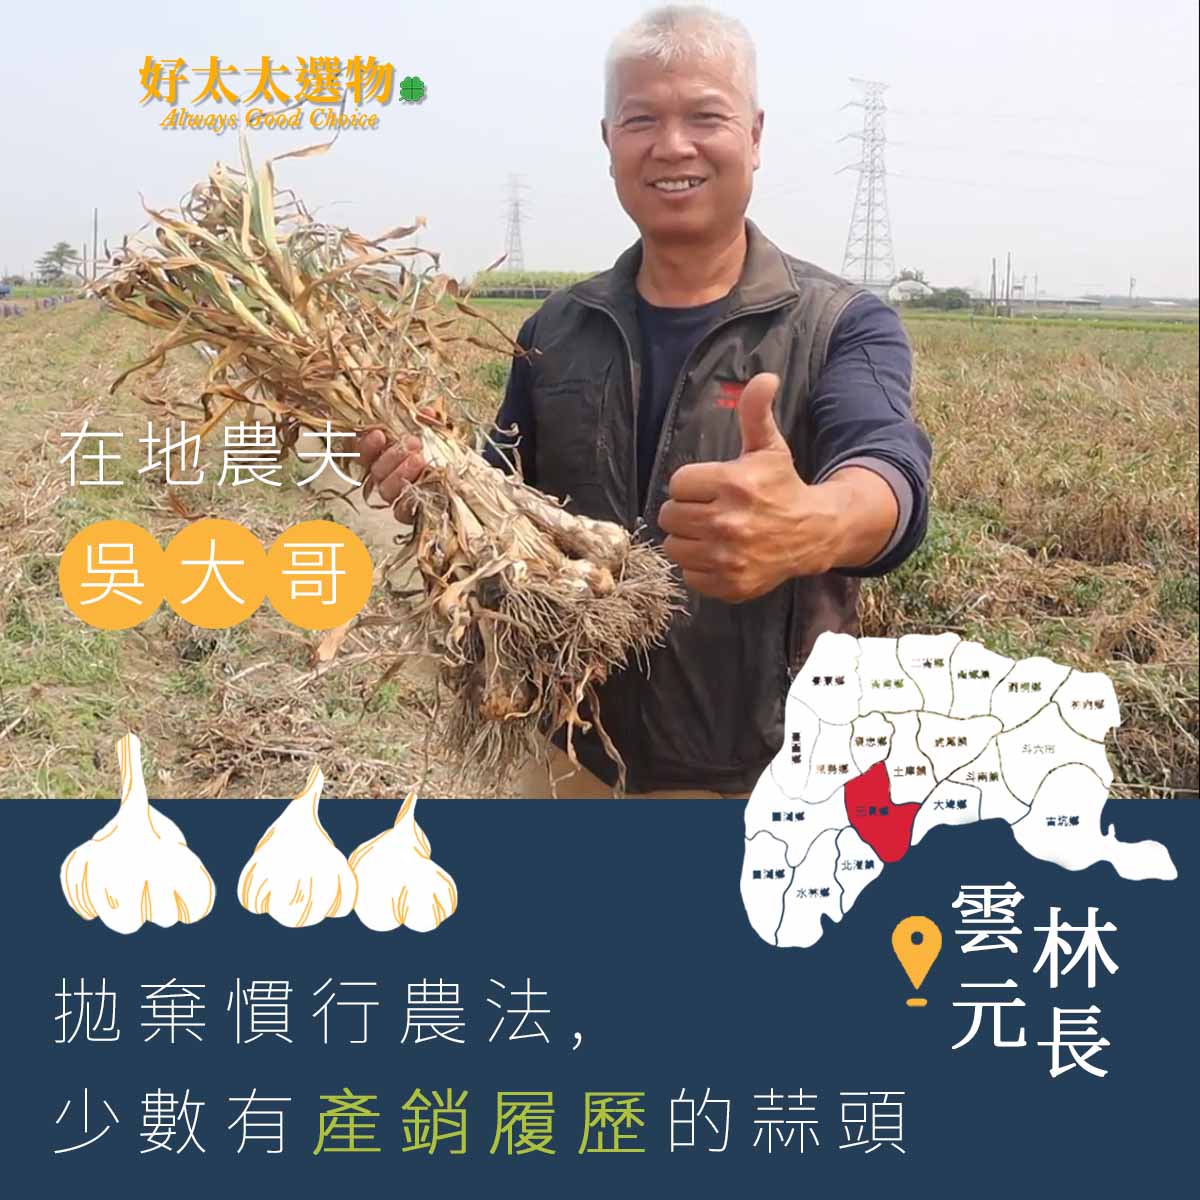 吳大哥是雲林少有堅持產銷履歷的高標準的專業農職人，目前也準備慢慢的交棒第二代了。